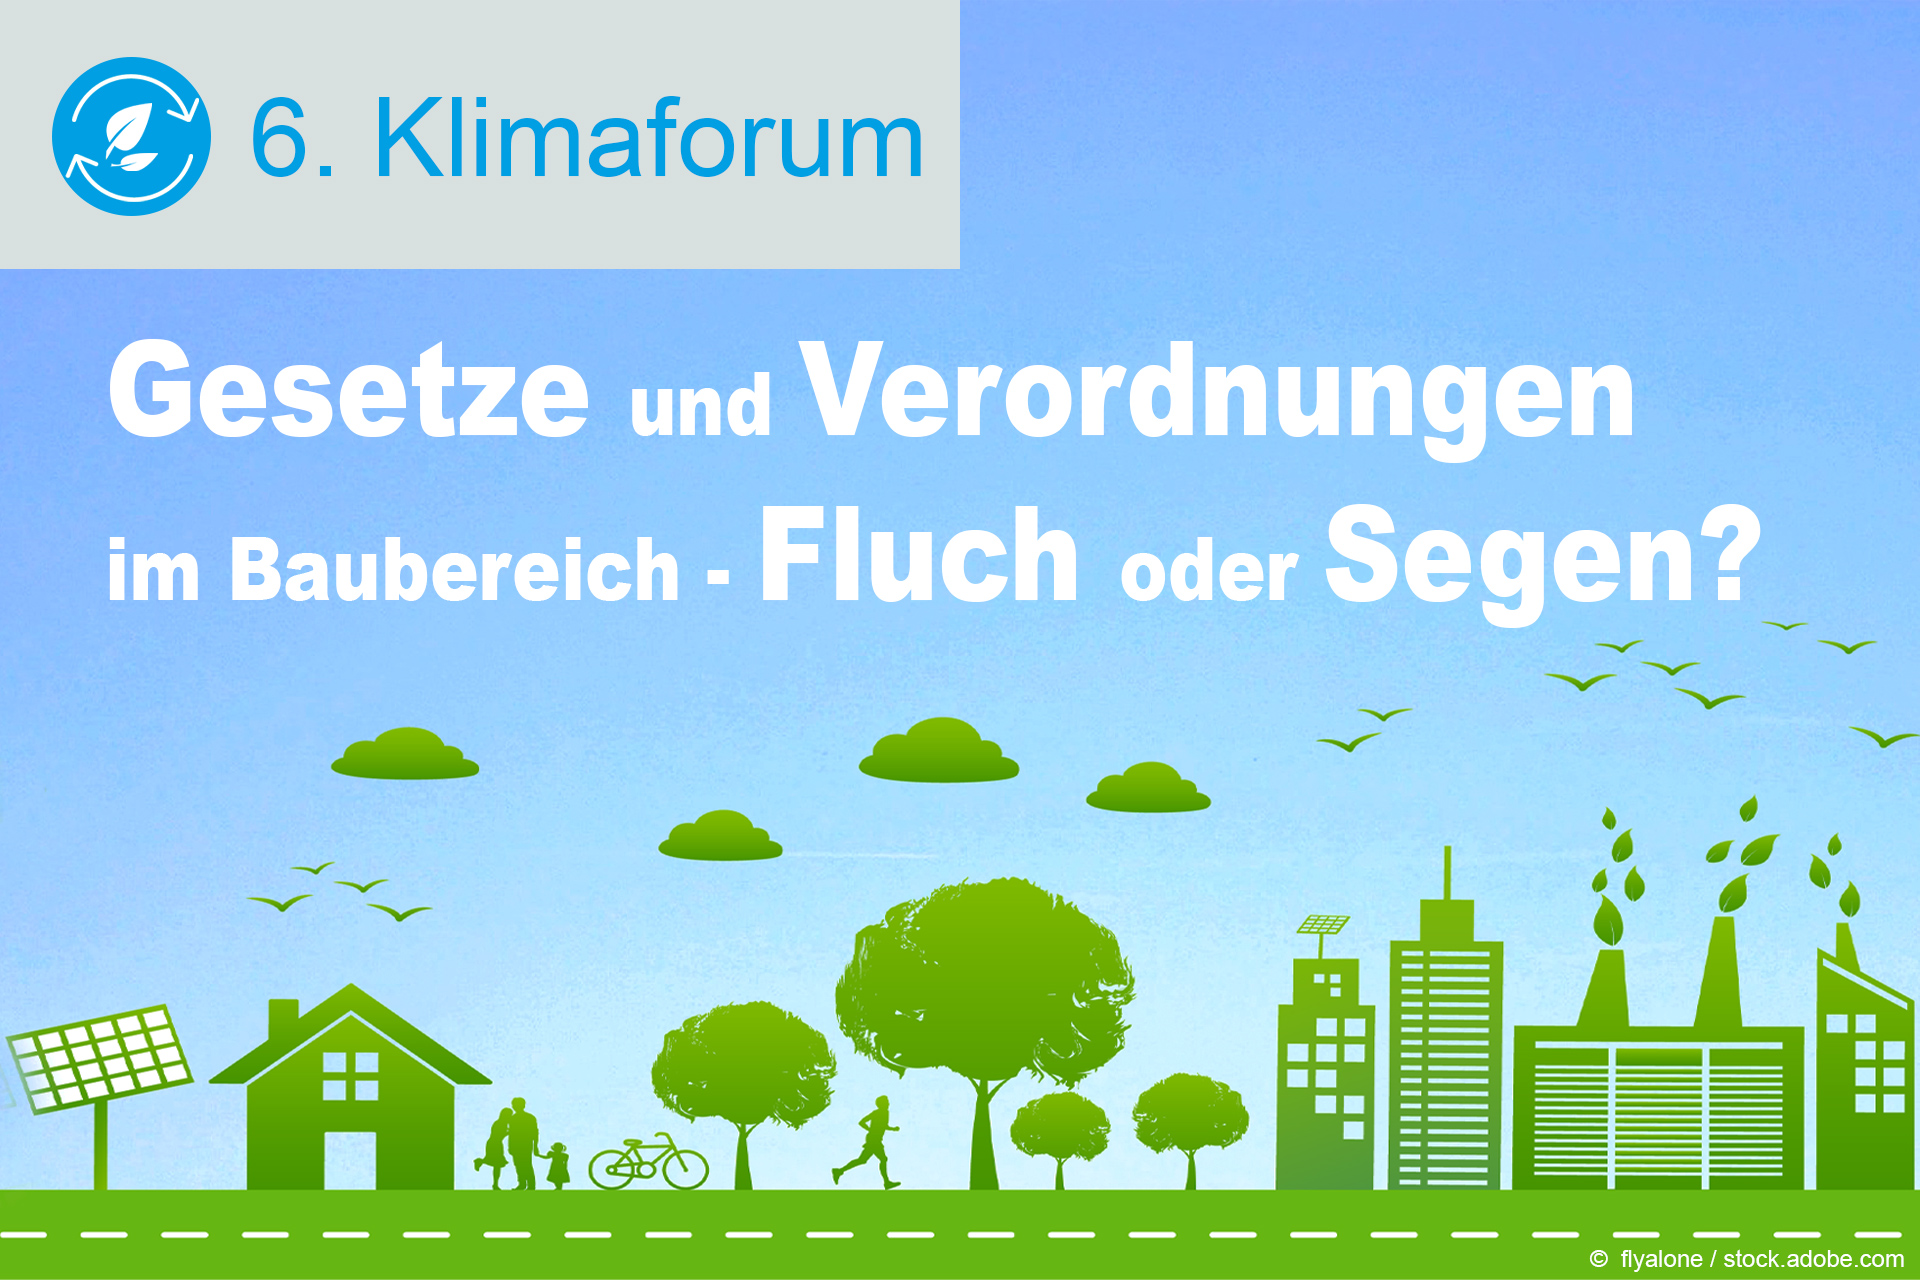 6. Klimaforum: Gesetze und Verordnungen im Baubereich - Fluch oder Segen für Klimaschutz und Energieeffizienz?